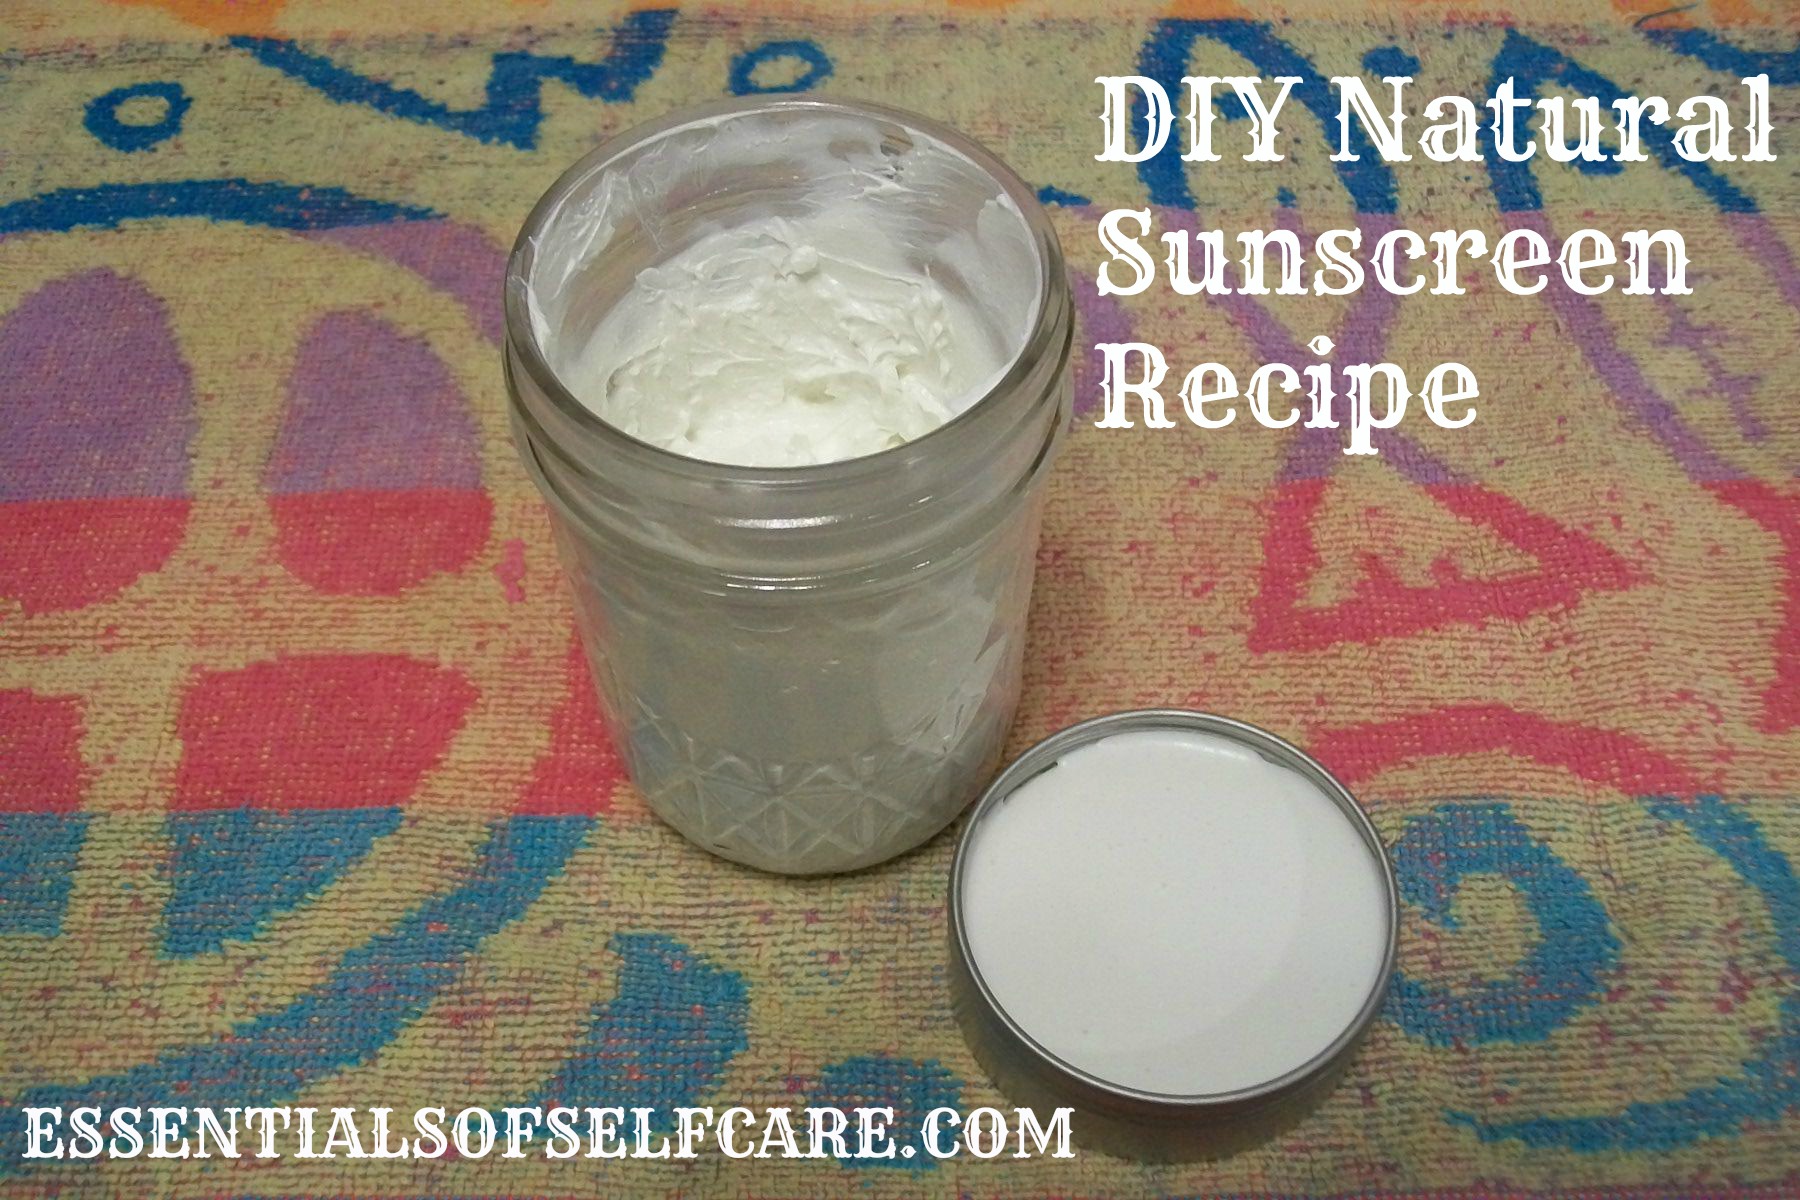 DIY Natural Sunscreen Recipe